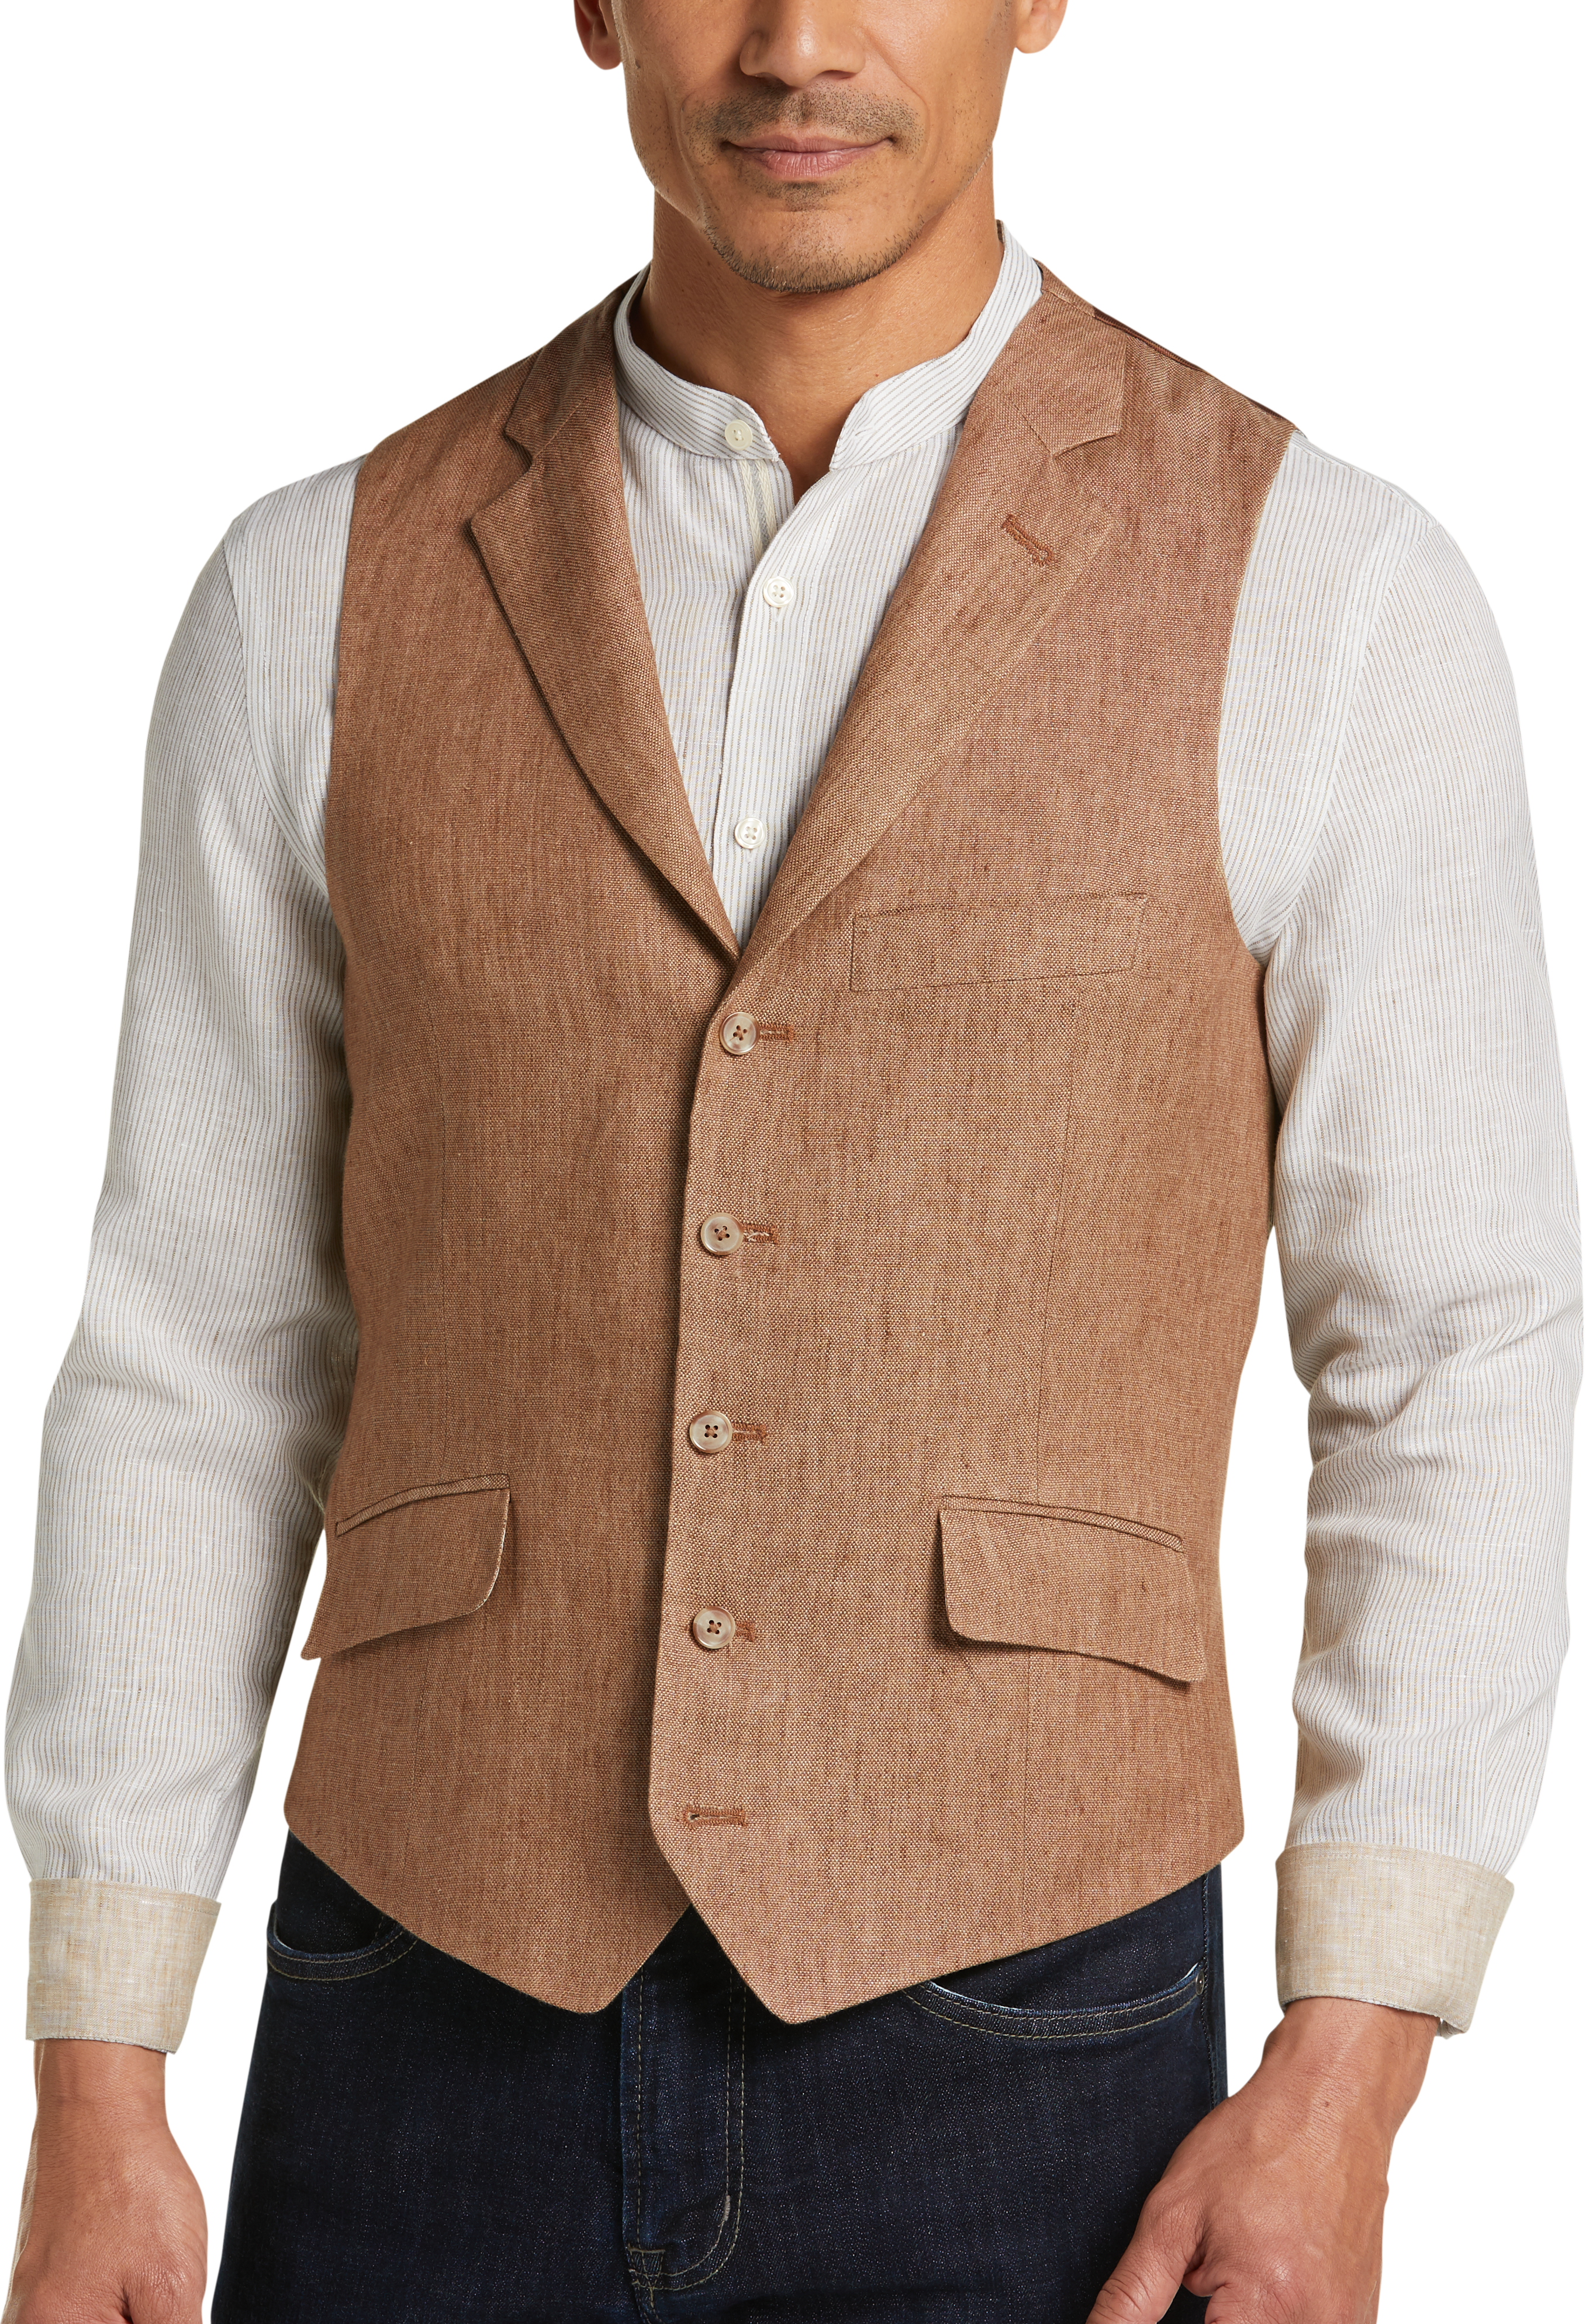 Joseph Abboud Tan Rust Modern Fit Suit Separates Vest - Men's Sale ...